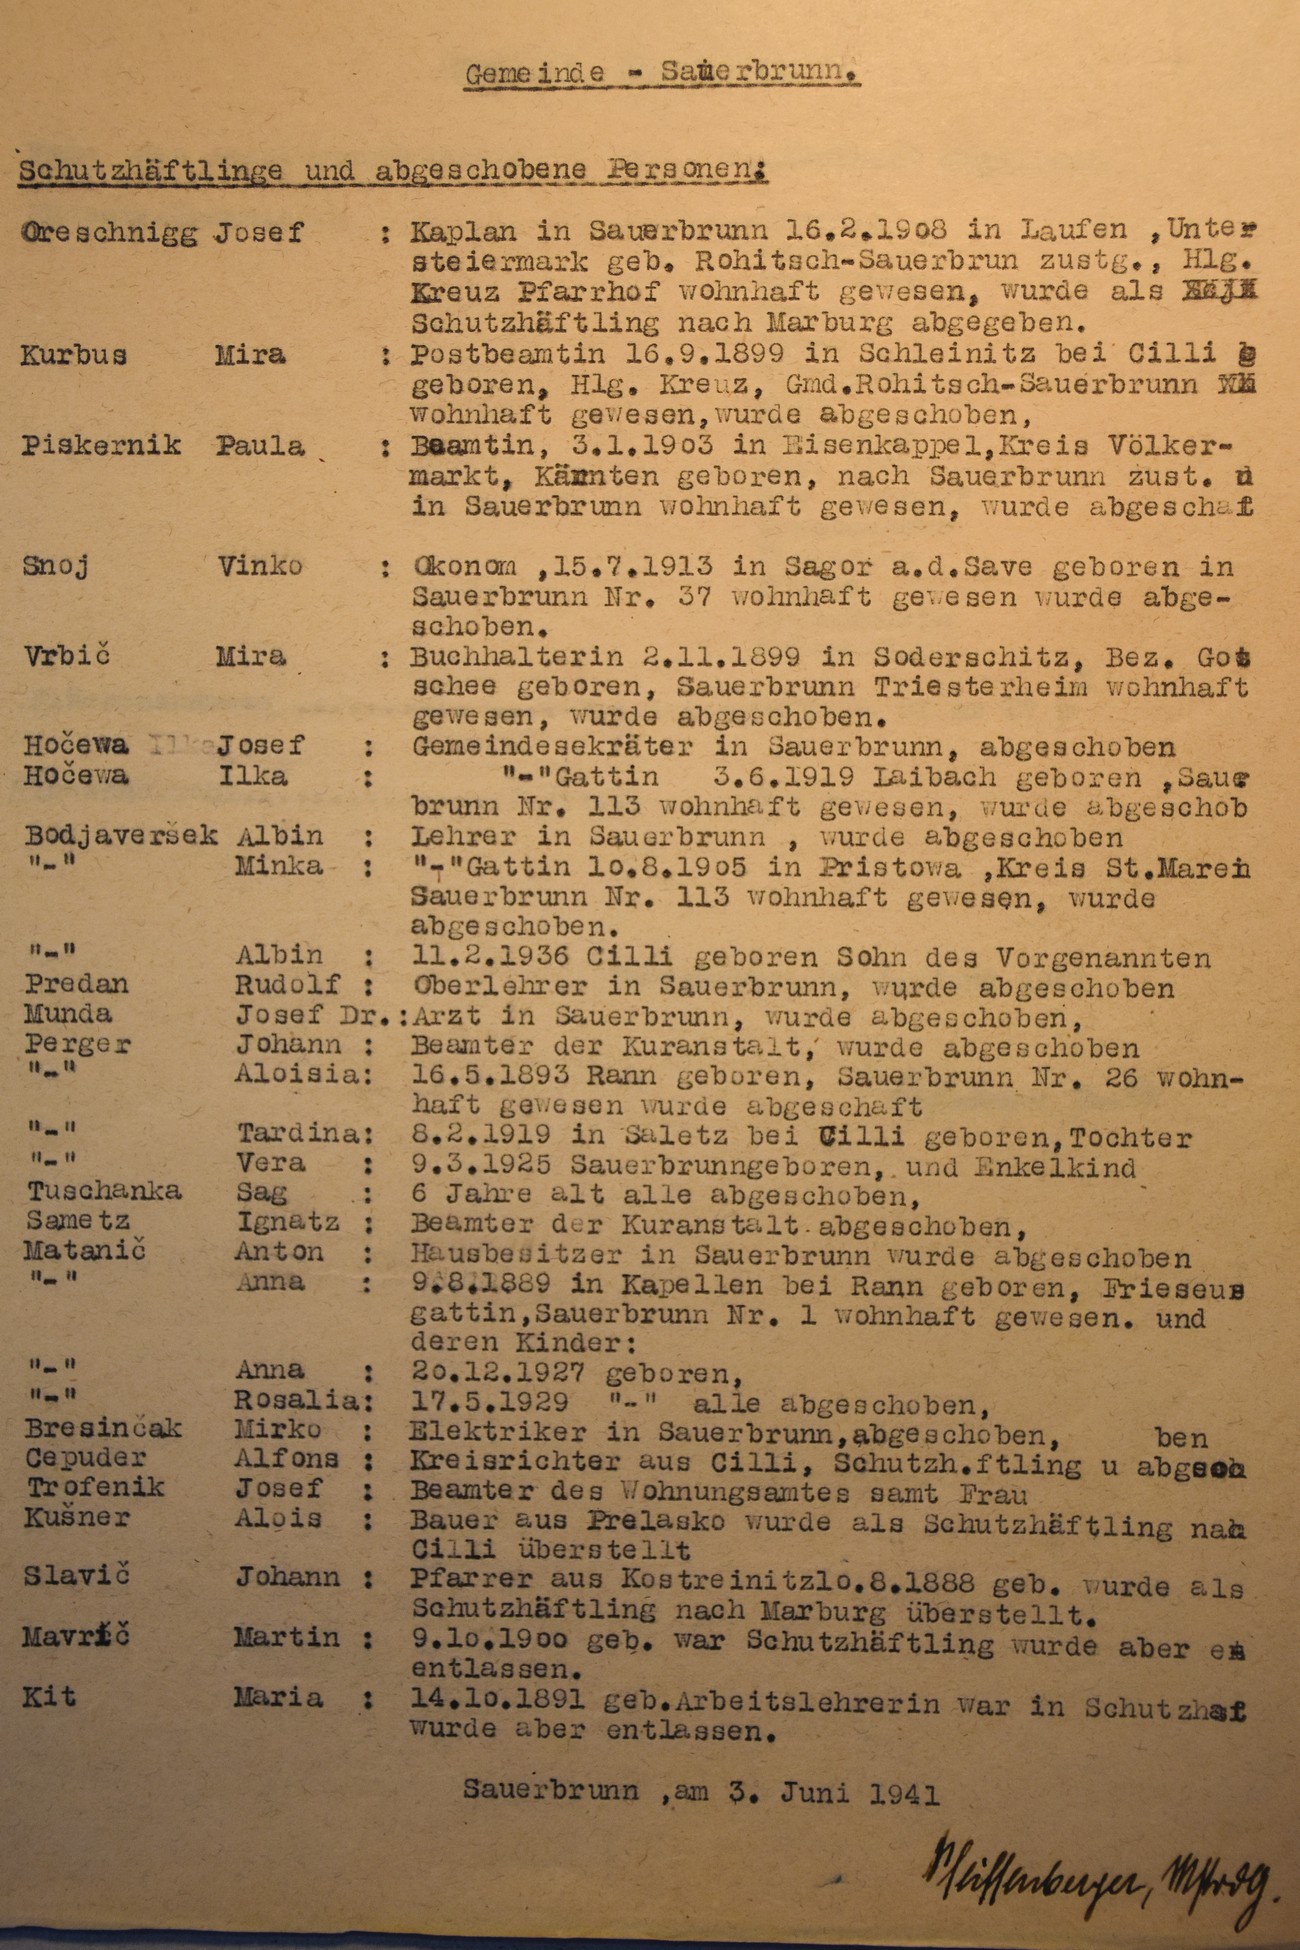 Seznam aretiranih in izgnanih oseb na območju občine Rogaška Slatina. Spisek zajema obdobje do 3. junija 1941. Kaplan iz Župnijskega doma cerkve Sv. Križa in župnik iz Kostrivnice sta bila aretirana in premeščena v mariborske zapore. Izgon je doletel tudi knjižničarje, zdravnike, učitelje (v izgnanstvo je odšel tudi Rudolf Predan, nadučitelj Svetokriške šole), uradnike in tajnike na občini, pošti, v zdravilišču (tudi Ivana Gračnerja, dotedanjega direktorja zdravilišča) ter razne posestnike. Arhiv RS.